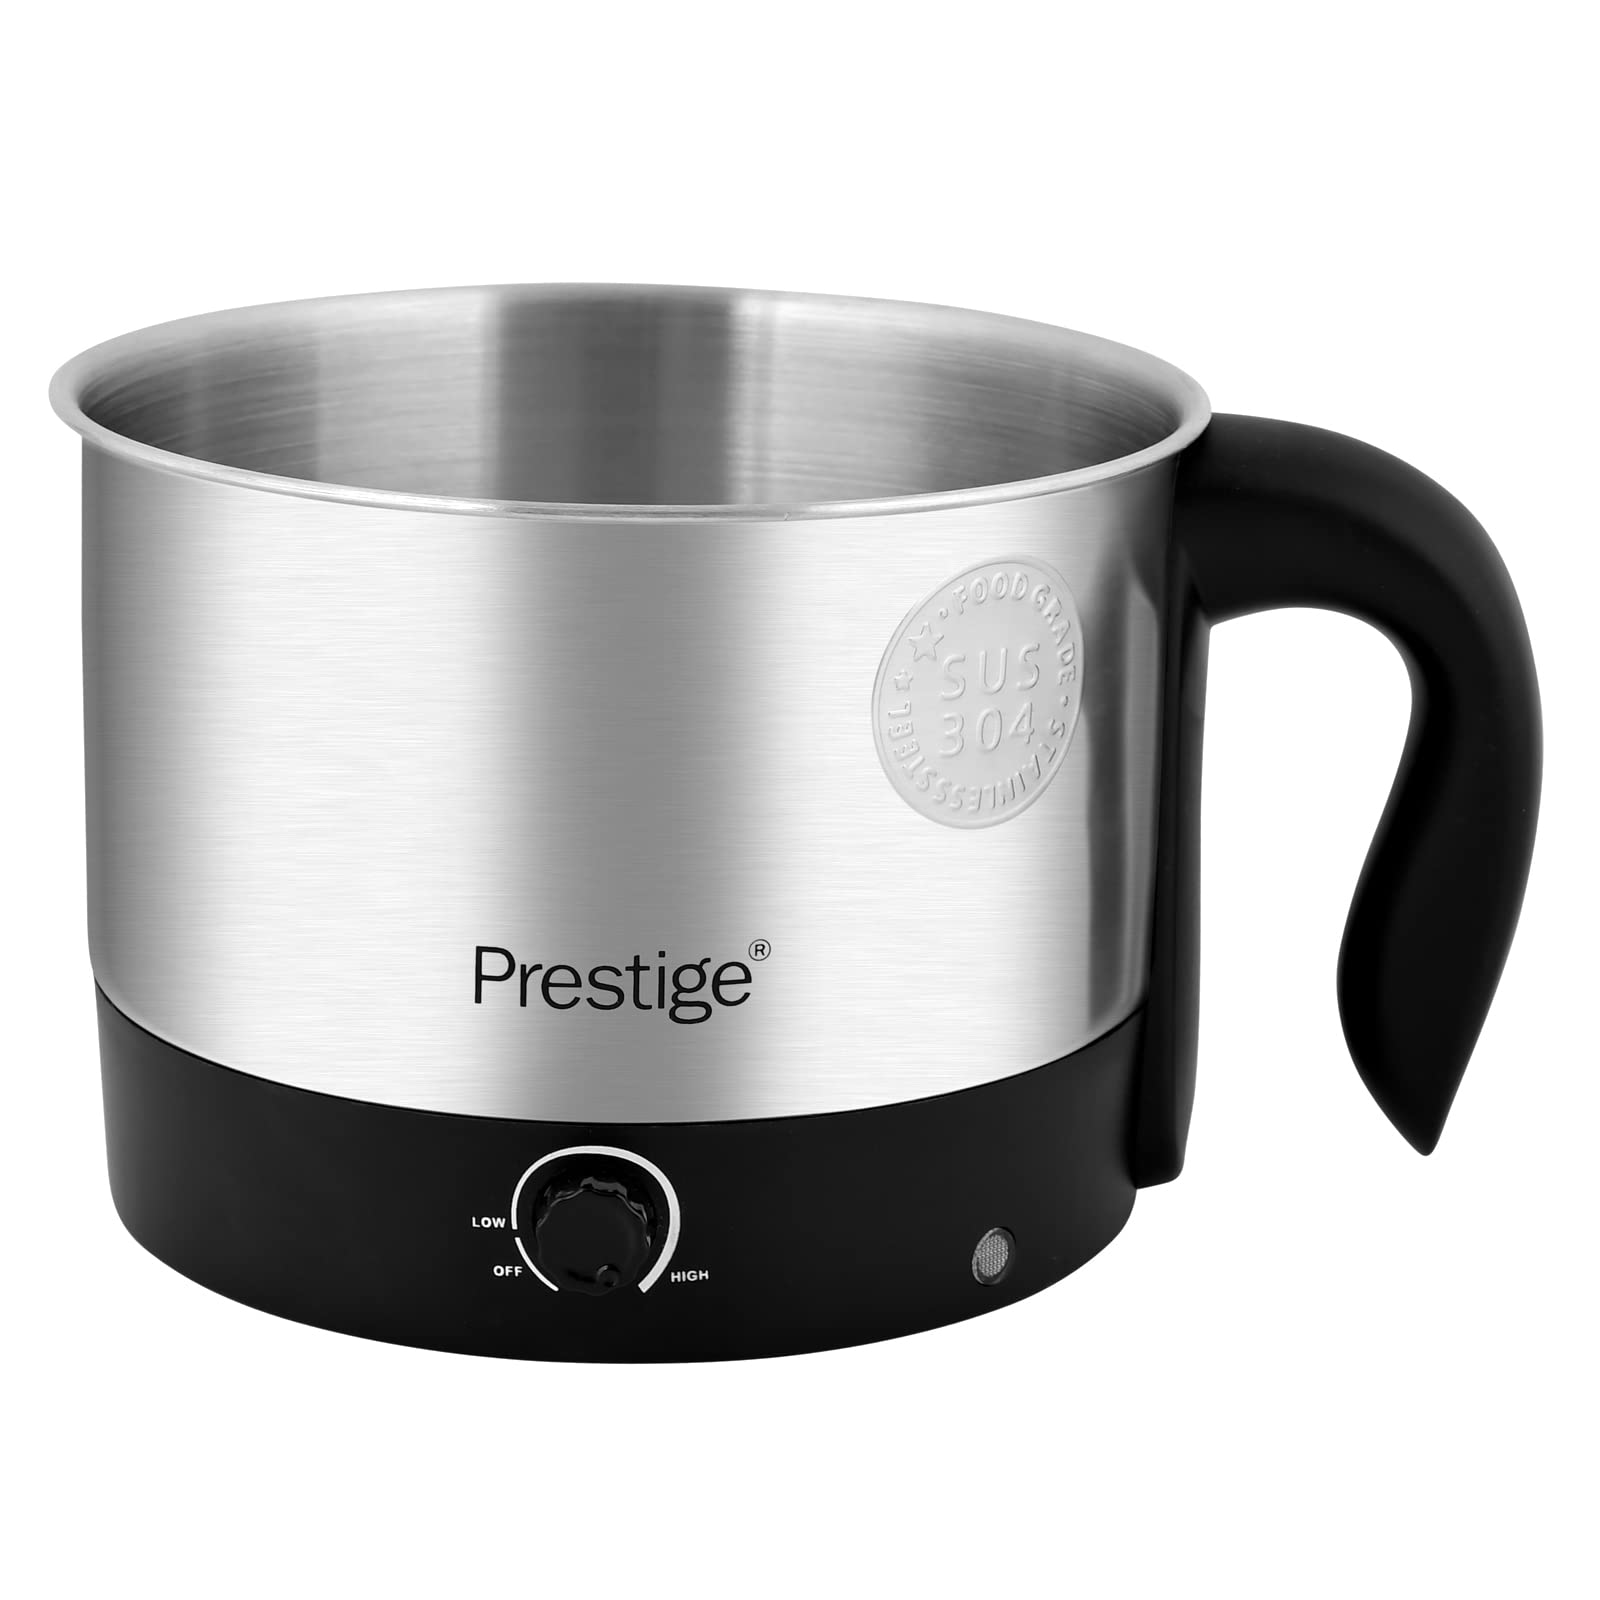 Prestige Multi Purpose Kettle , 1 year warranty